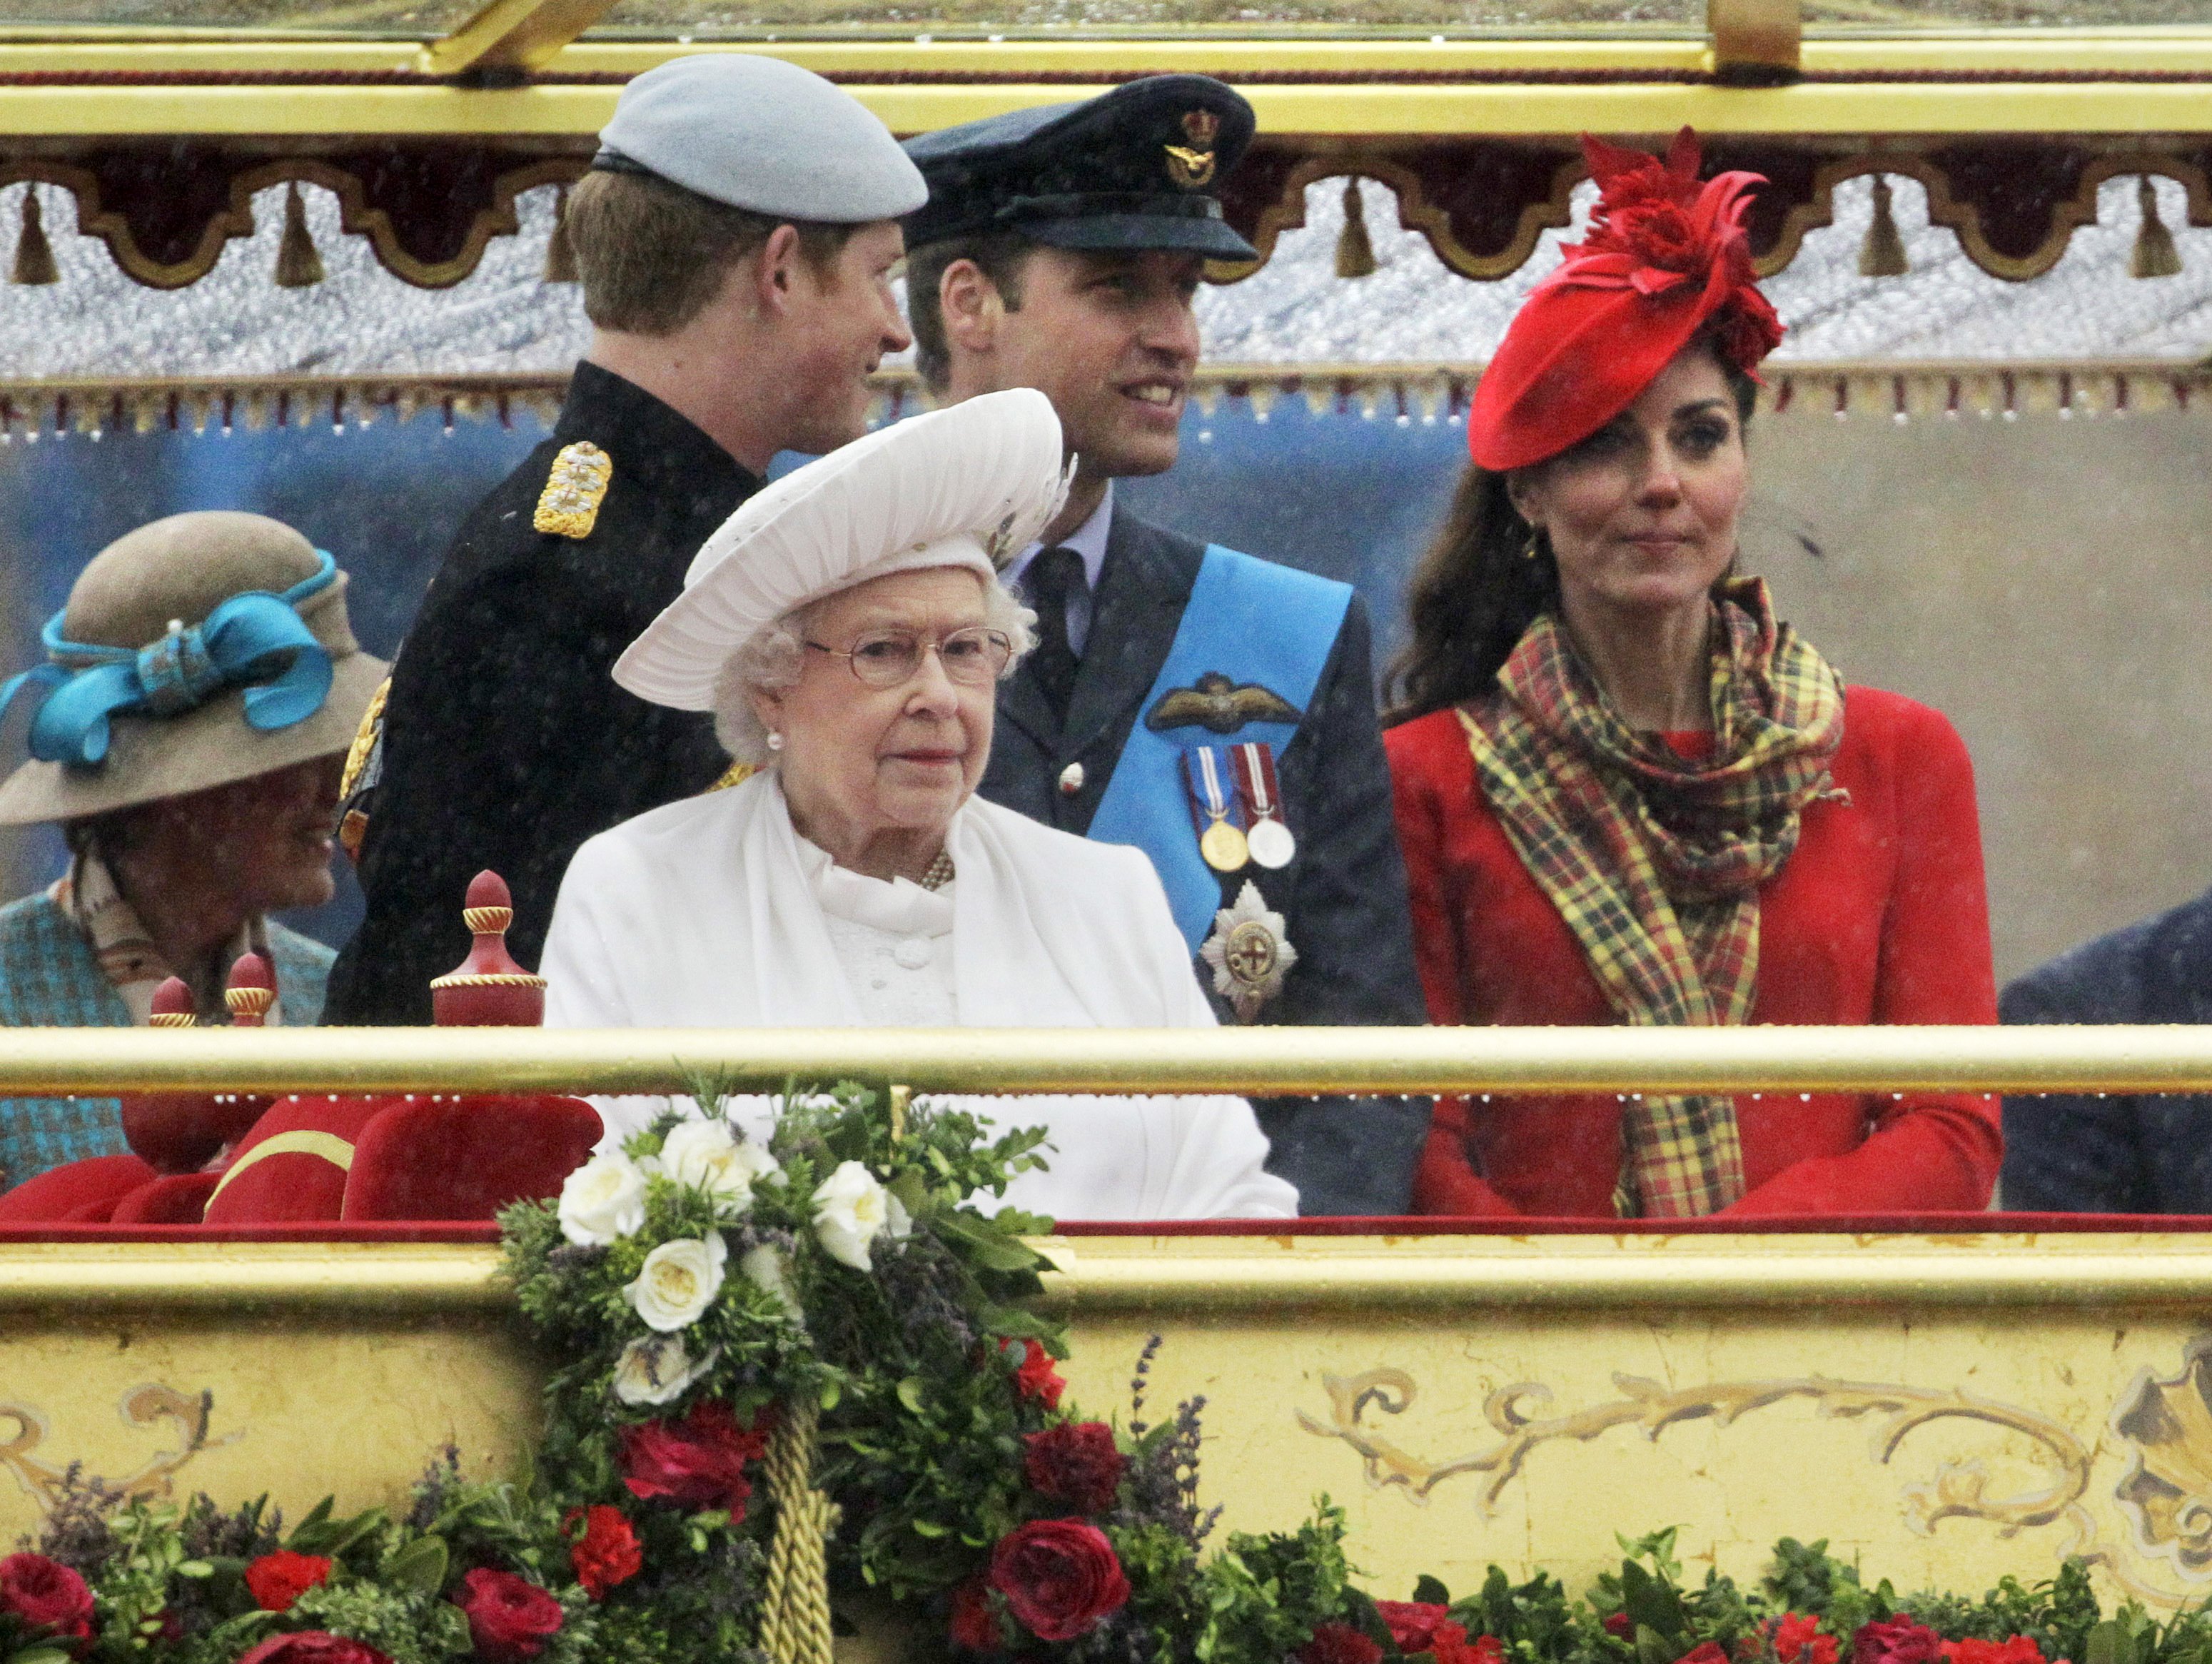 El príncipe Harry, la reina británica Elizabeth II, el príncipe William y Catherine, Duquesa de Cambridge, durante el desfile en el río por el Jubileo de Diamante en Londres el 3 de junio de 2012. | Foto: Getty Images